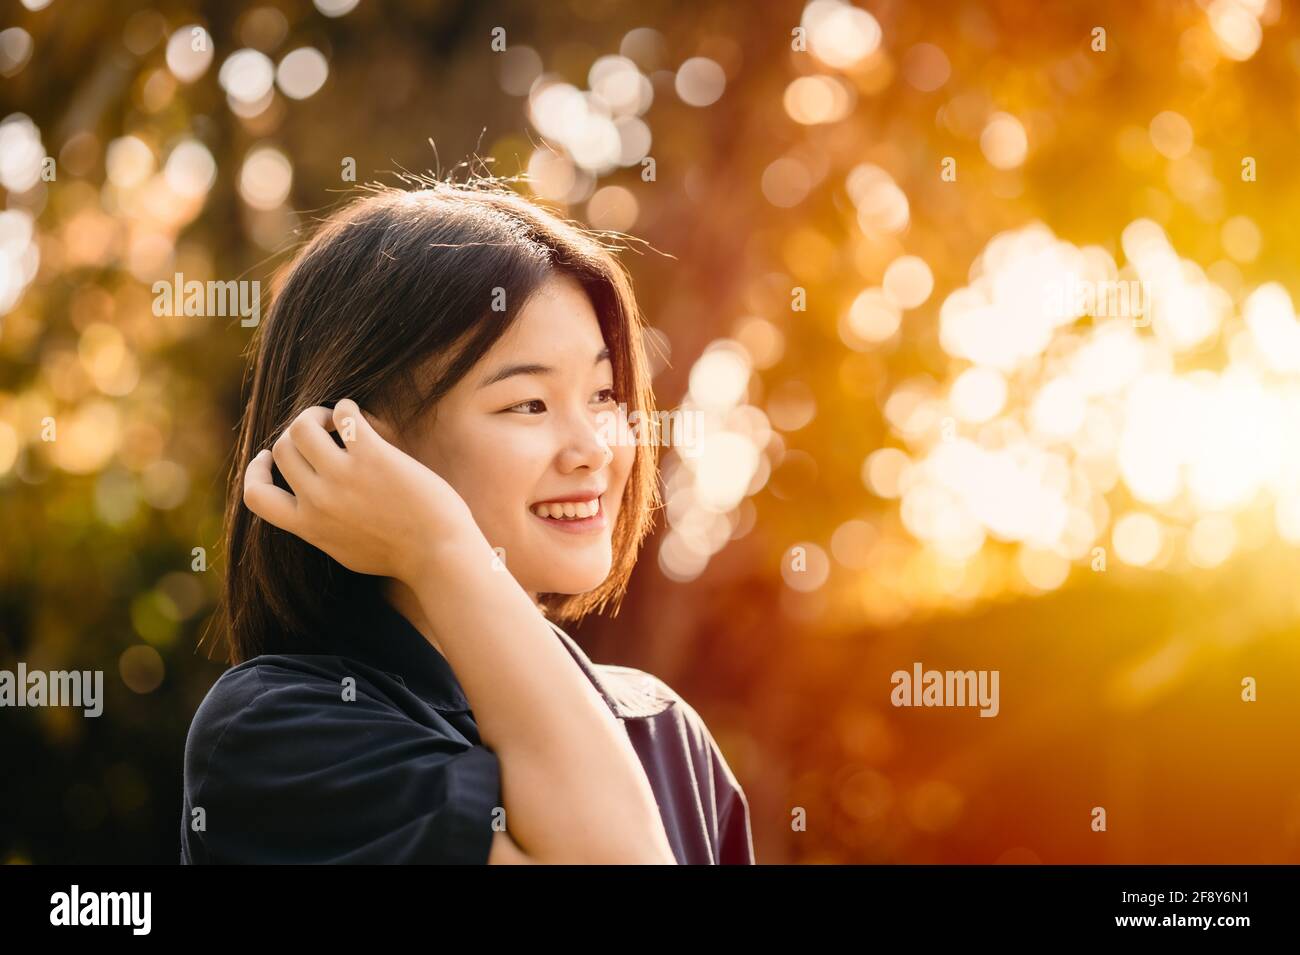 Asiatisch niedlich Mädchen teen unschuldig schüchtern lächelnd Glück Moment mit Natur Sonnenschein schönen Hintergrund Stockfoto